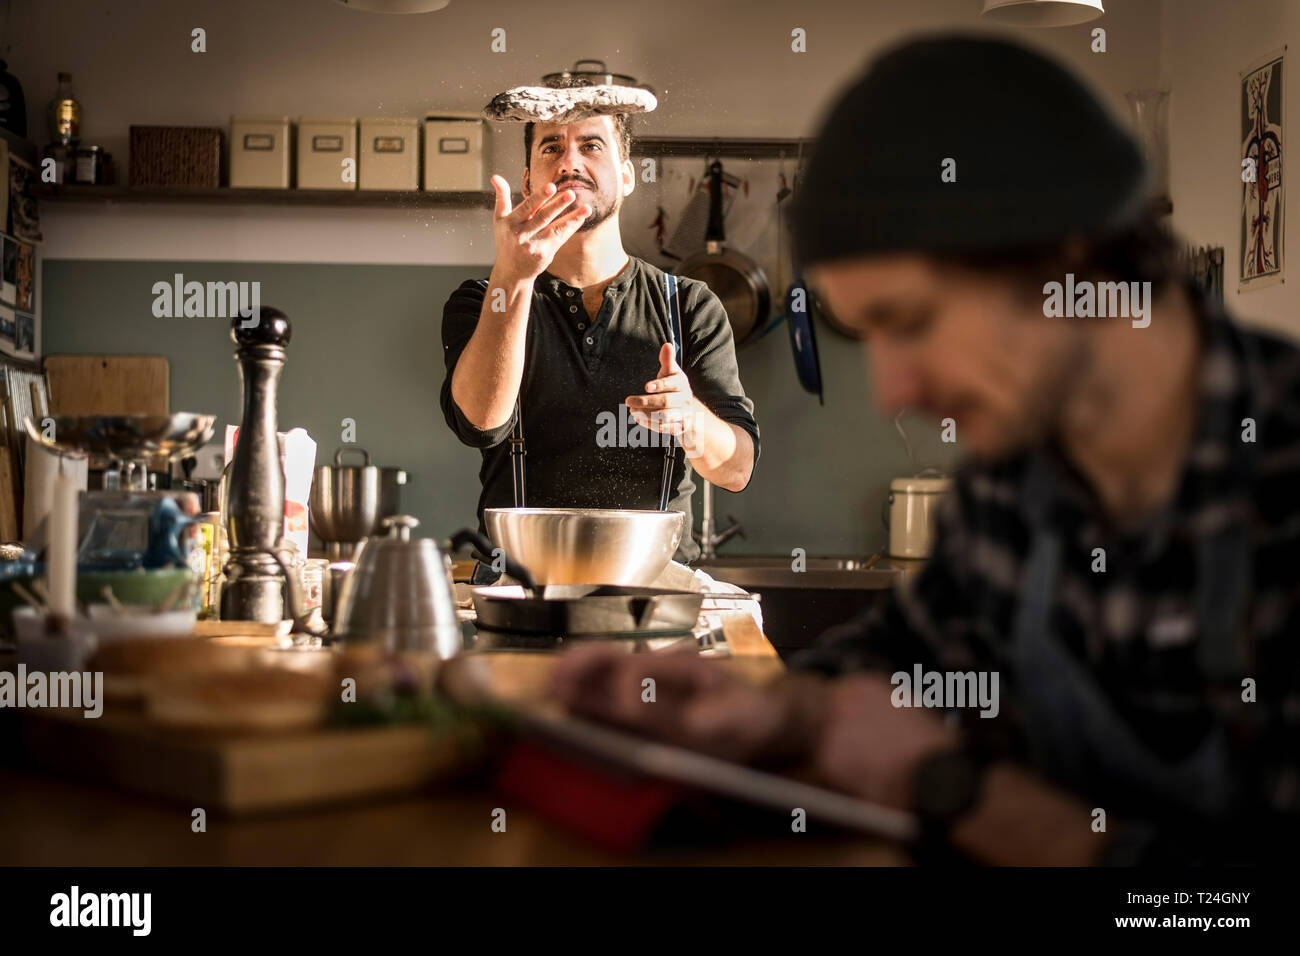 Un homme la préparation de pâte à pain tandis que l'autre est à l'aide de sa tablette numérique Banque D'Images